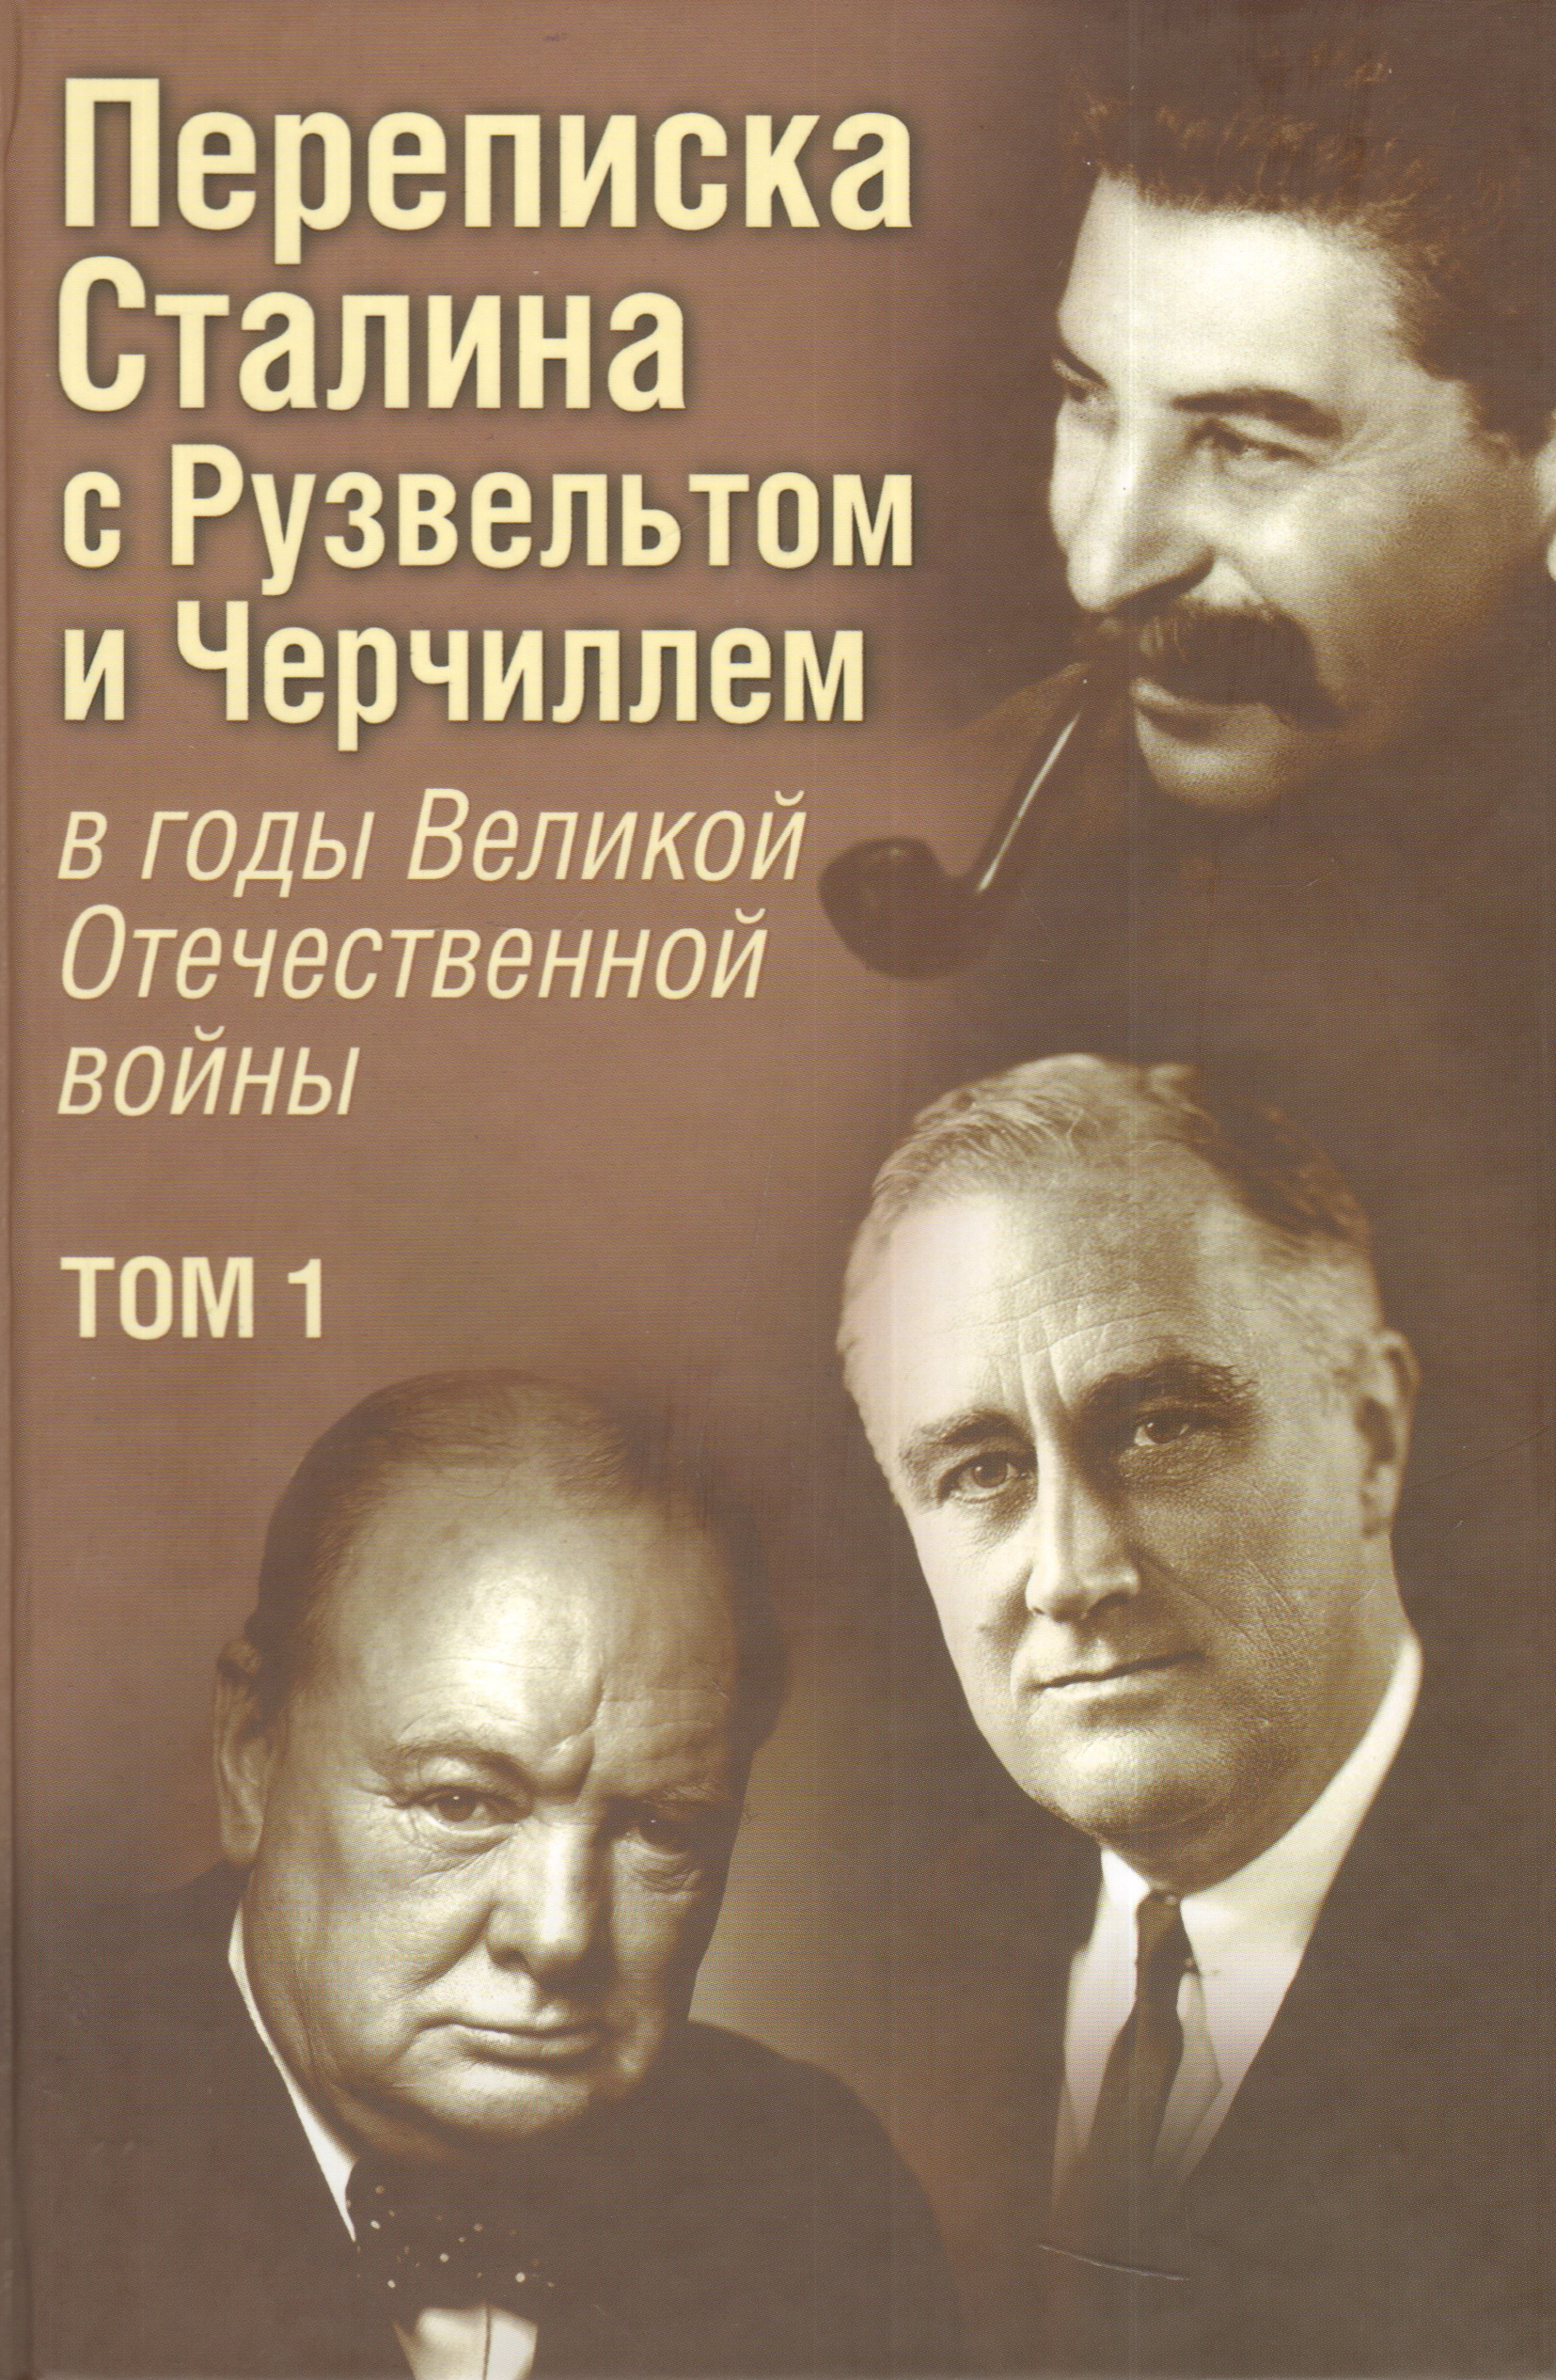 Переписка И. В. Сталина с Ф. Рузвельтом и У. Черчиллем, т.1